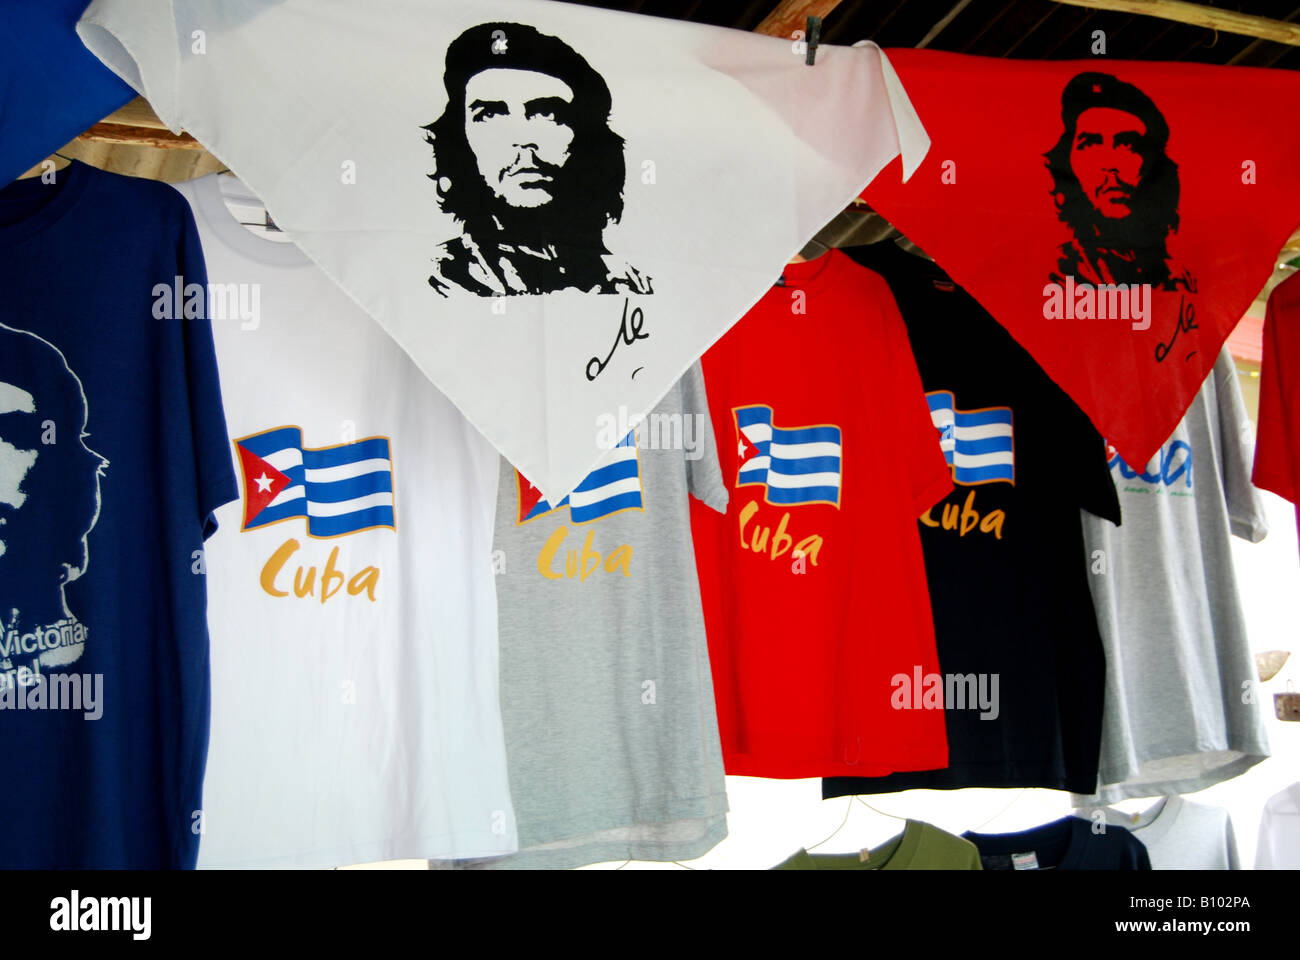 Marca de ropa Supreme vende prendas con la imagen de Che Guevara